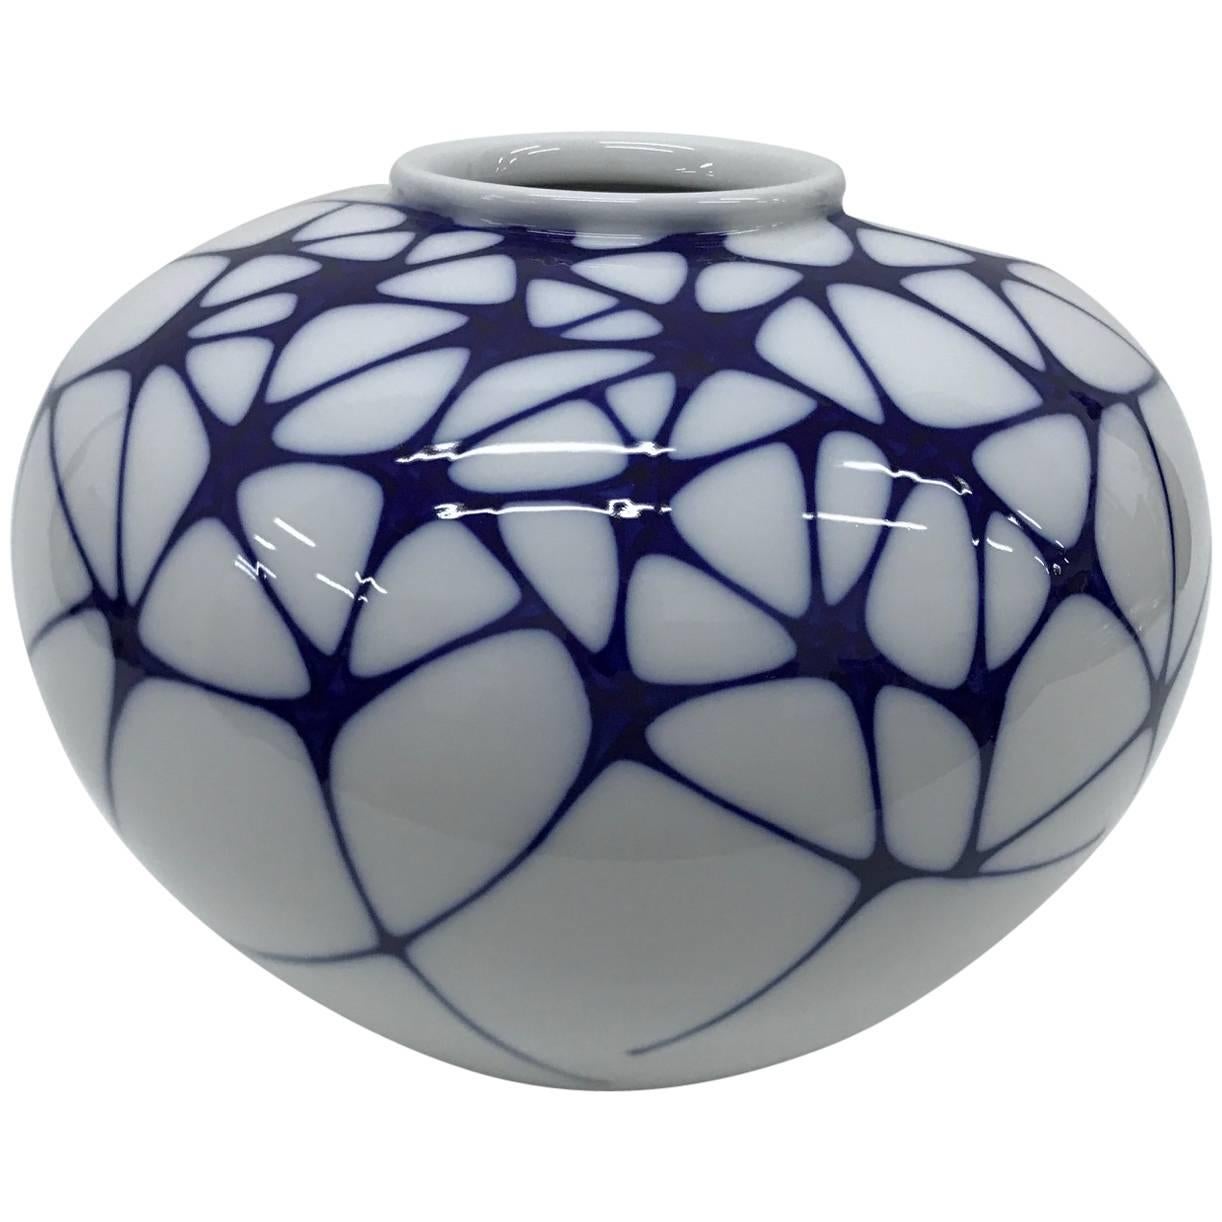 Enzo Mari Modern Deutsch white and blue Porcelain Vase for KPM, 2003